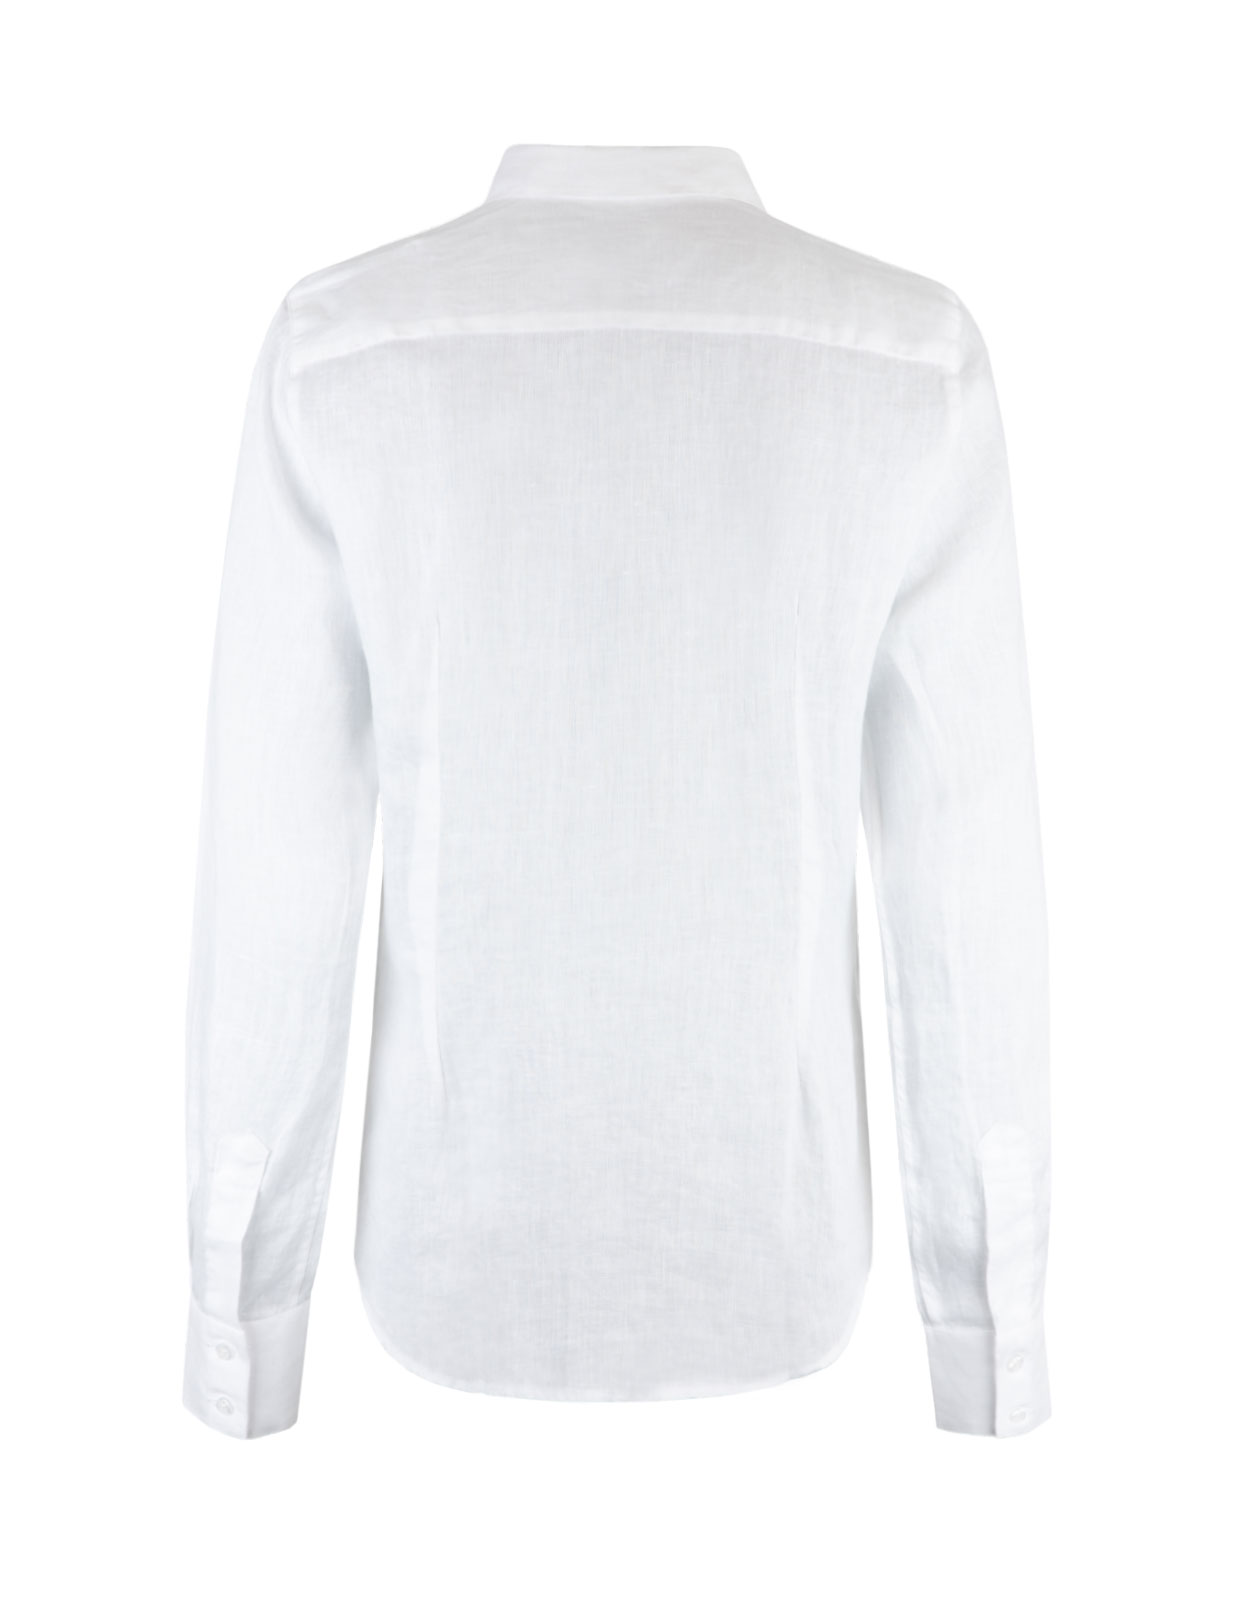 Linnen Shirt Long Sleeves White